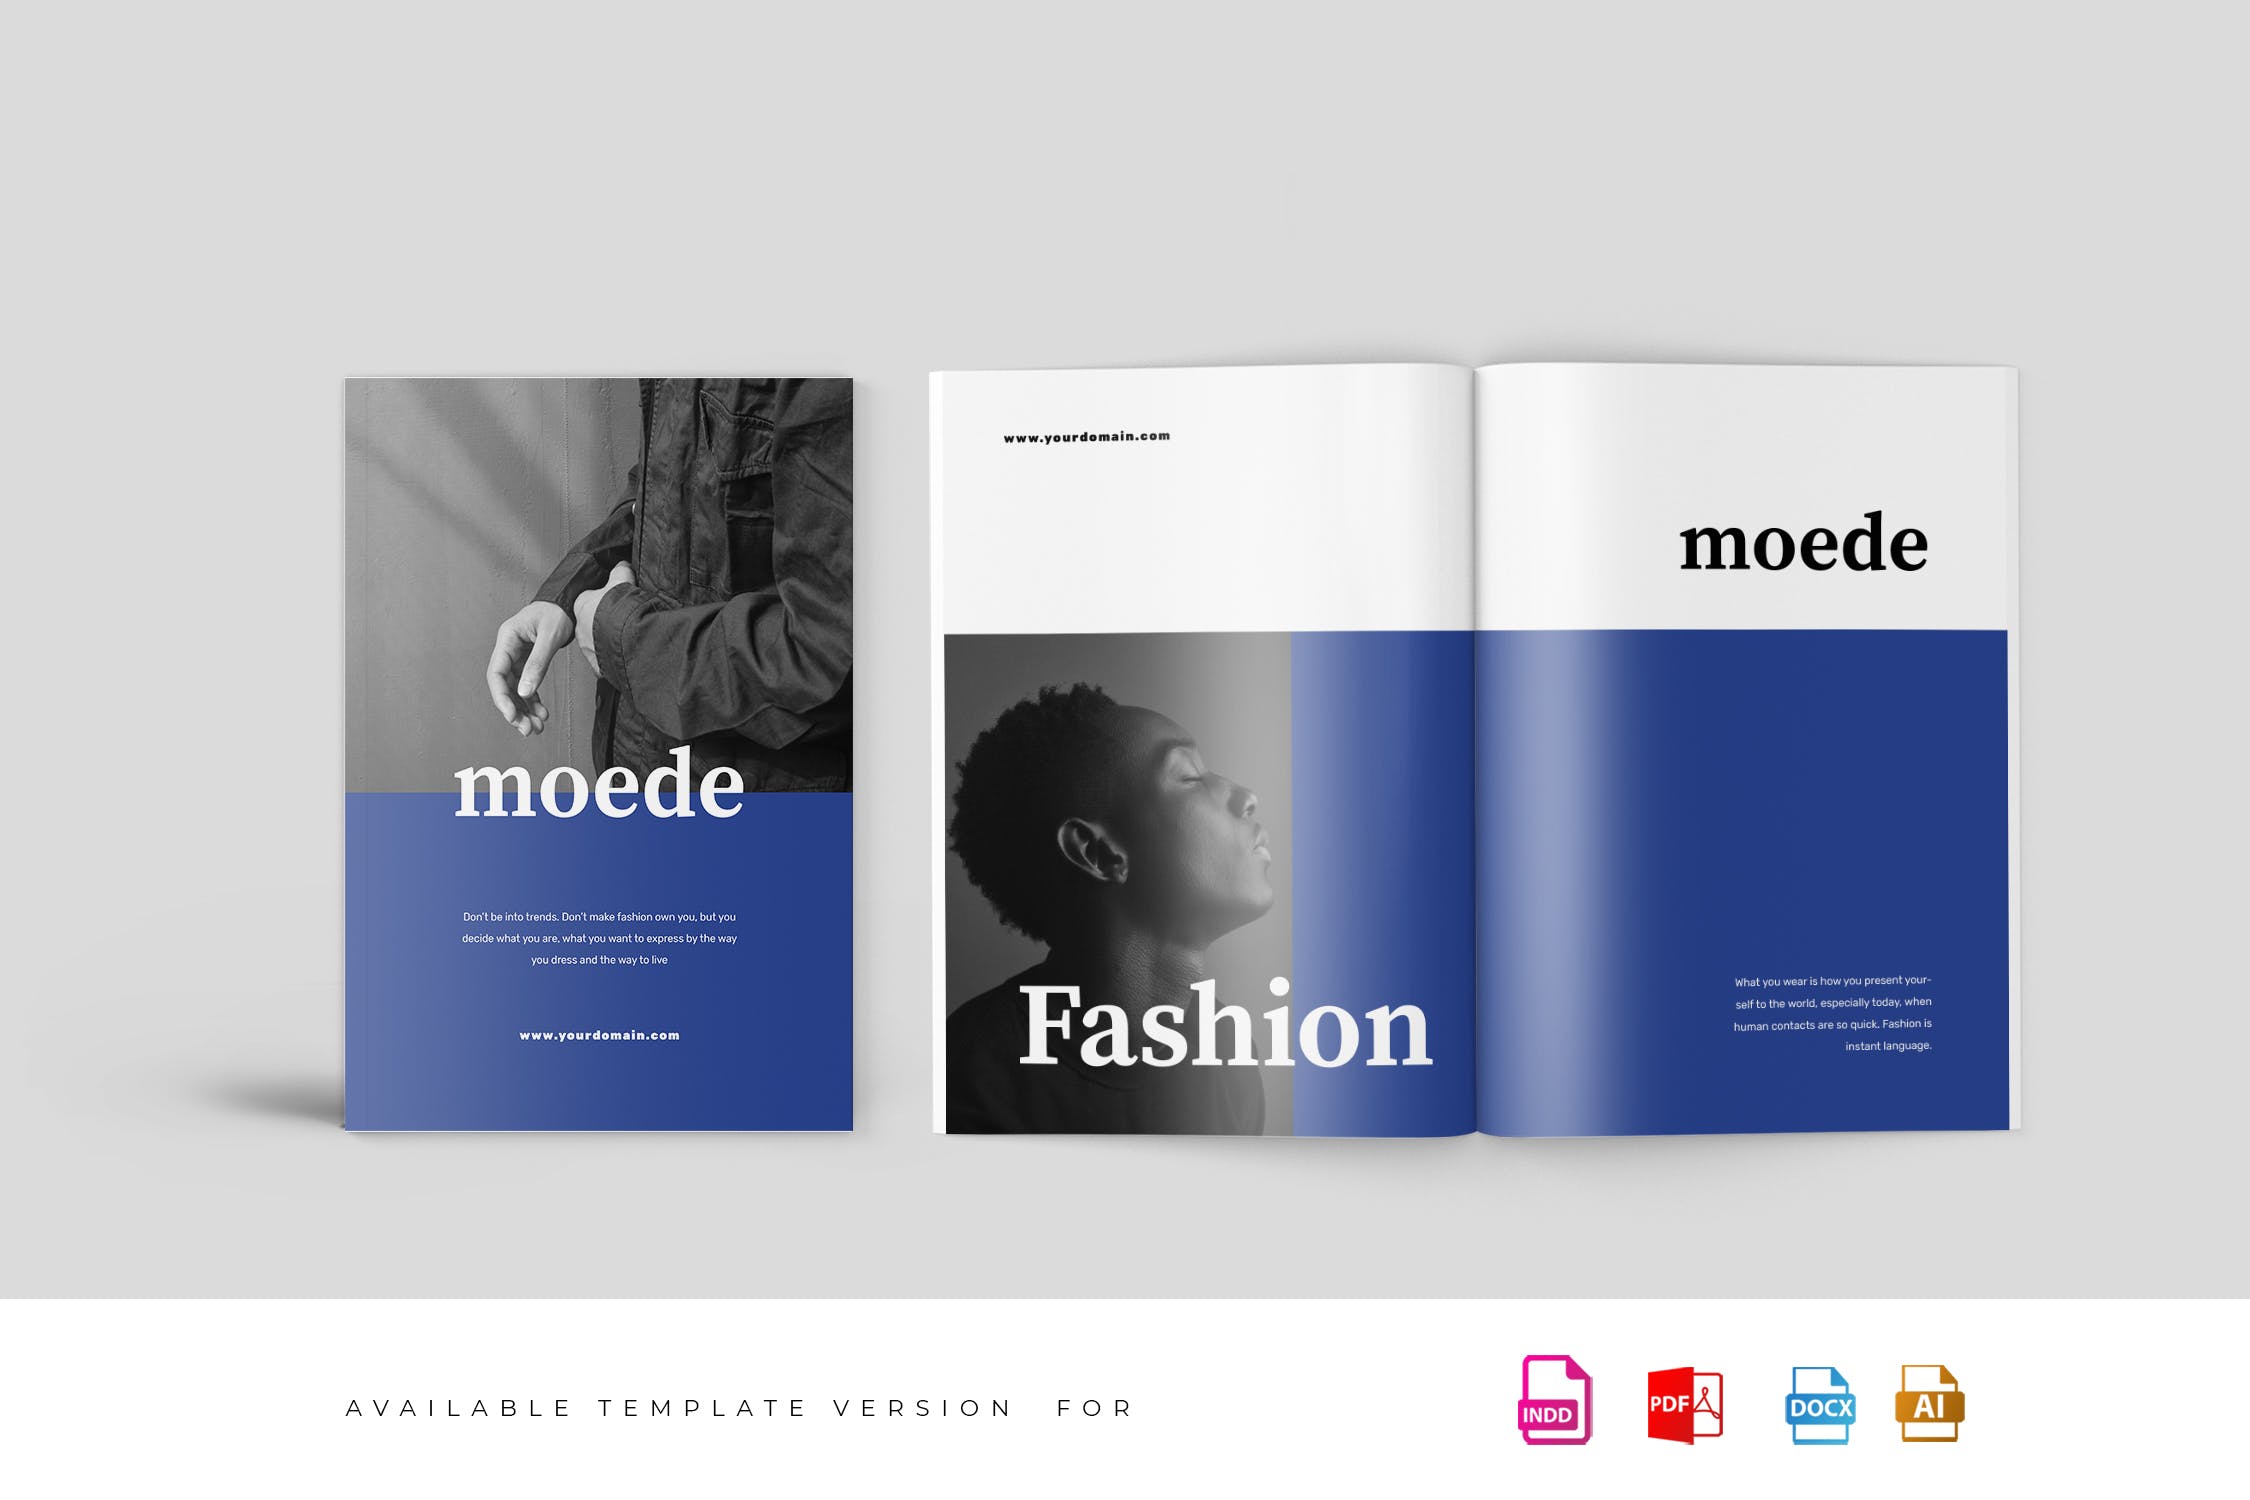 高端时尚服装品牌产品第一素材精选目录设计模板 Moede Fashion Lookbook Catalogue插图(1)